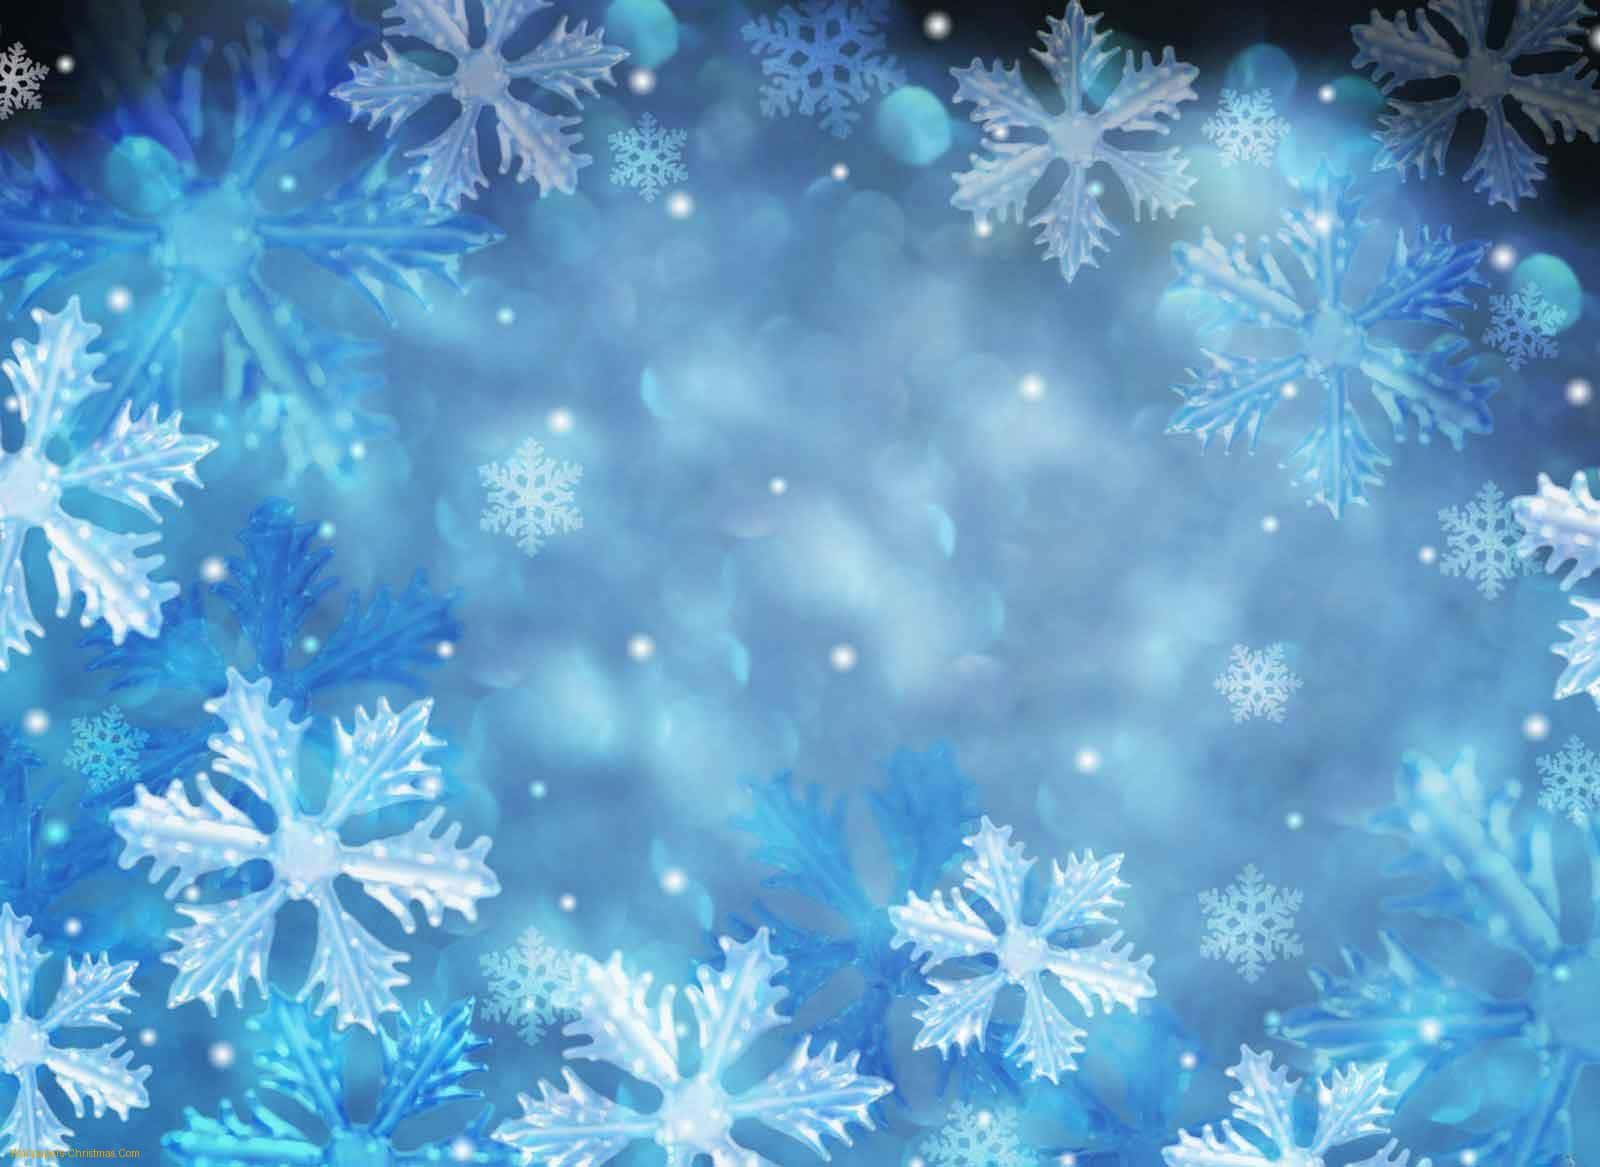 Kopplaav Och Njut Av En Fridfull Snöig Jul Hemma!